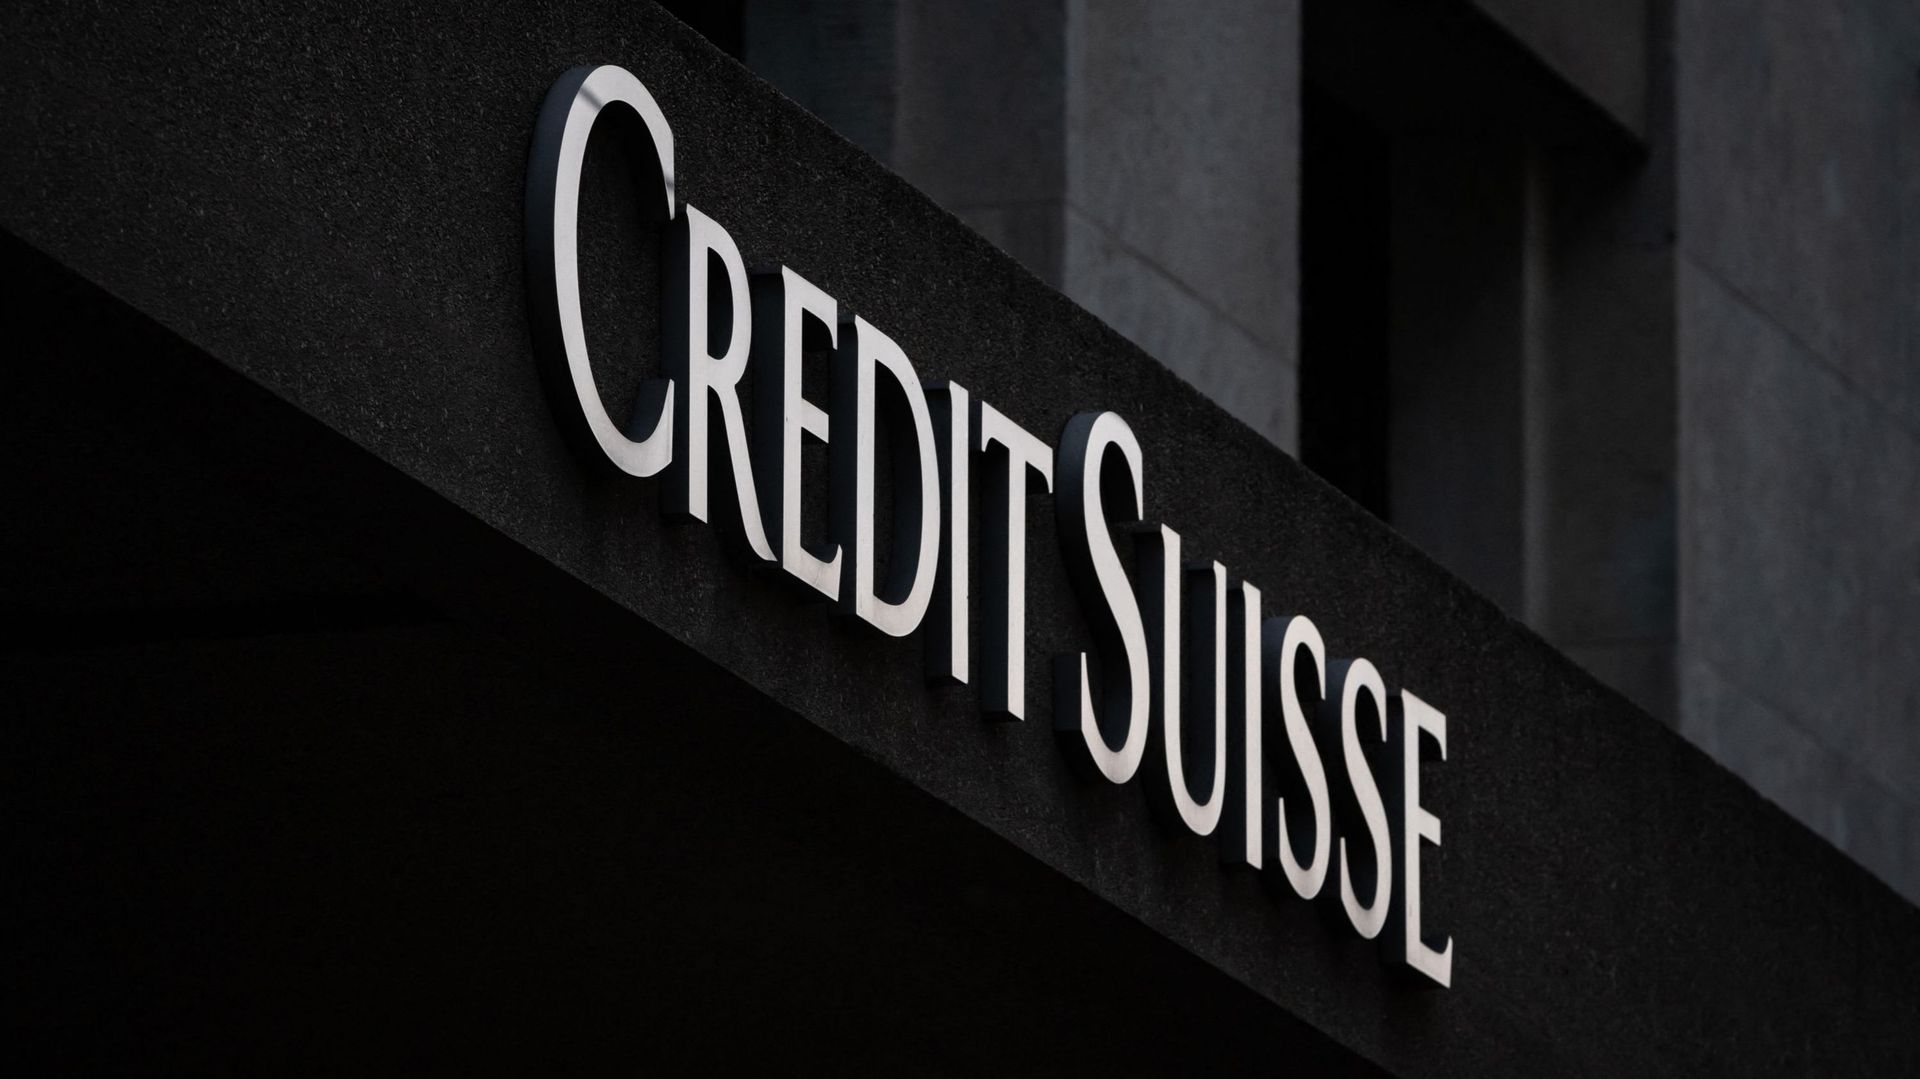 La fusion UBS-Credit Suisse ne rassure pas les bourses asiatiques